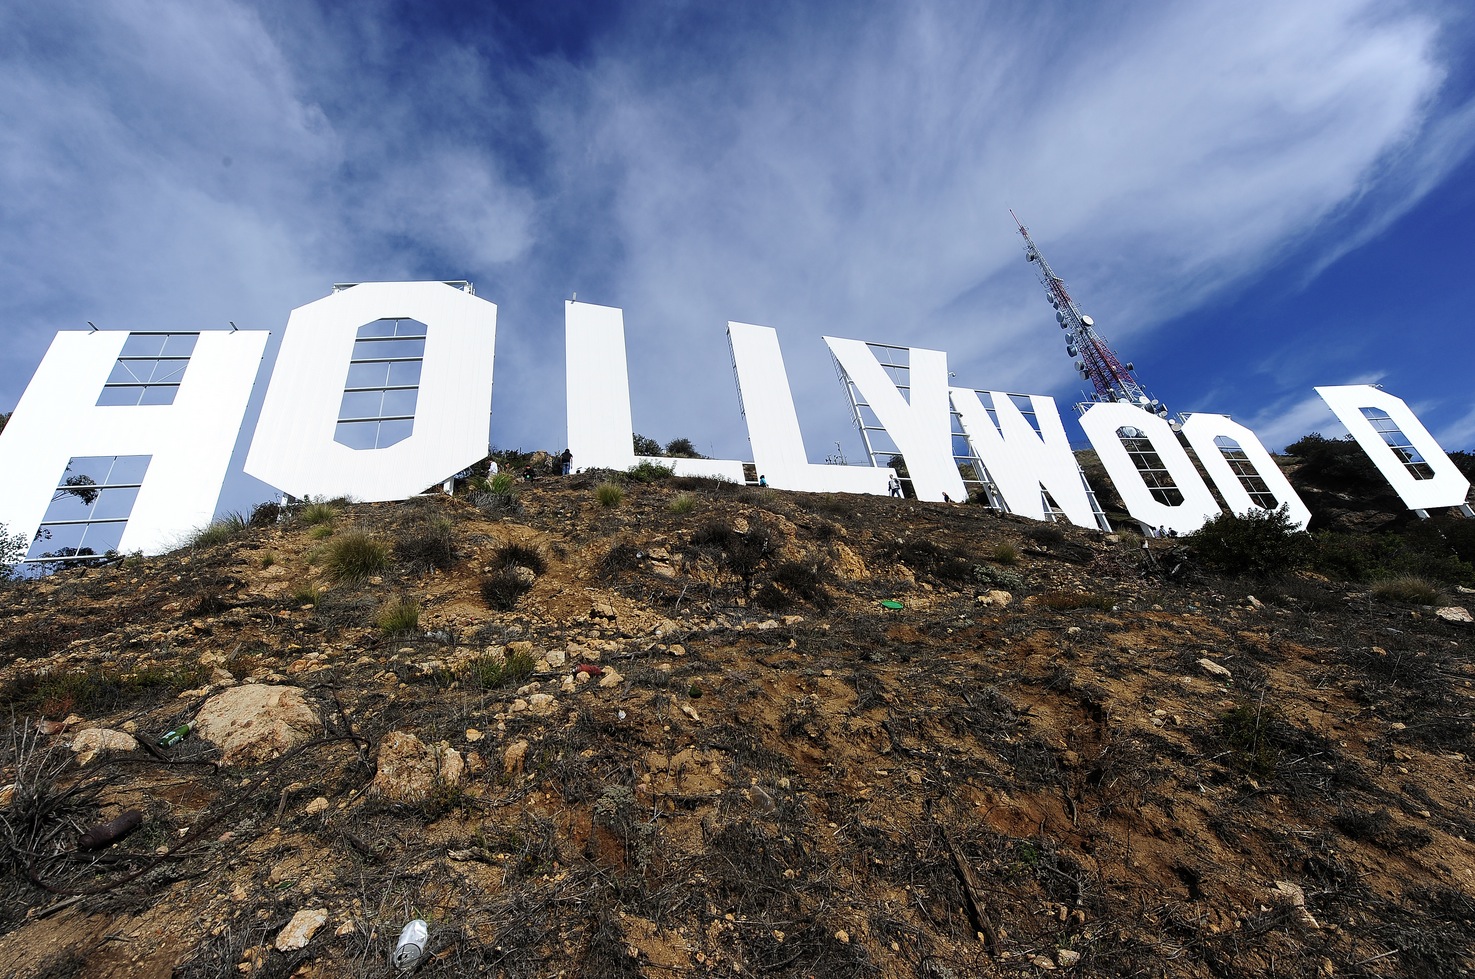 Projeto transforma letreiro de Hollywood em hotel – Mercado